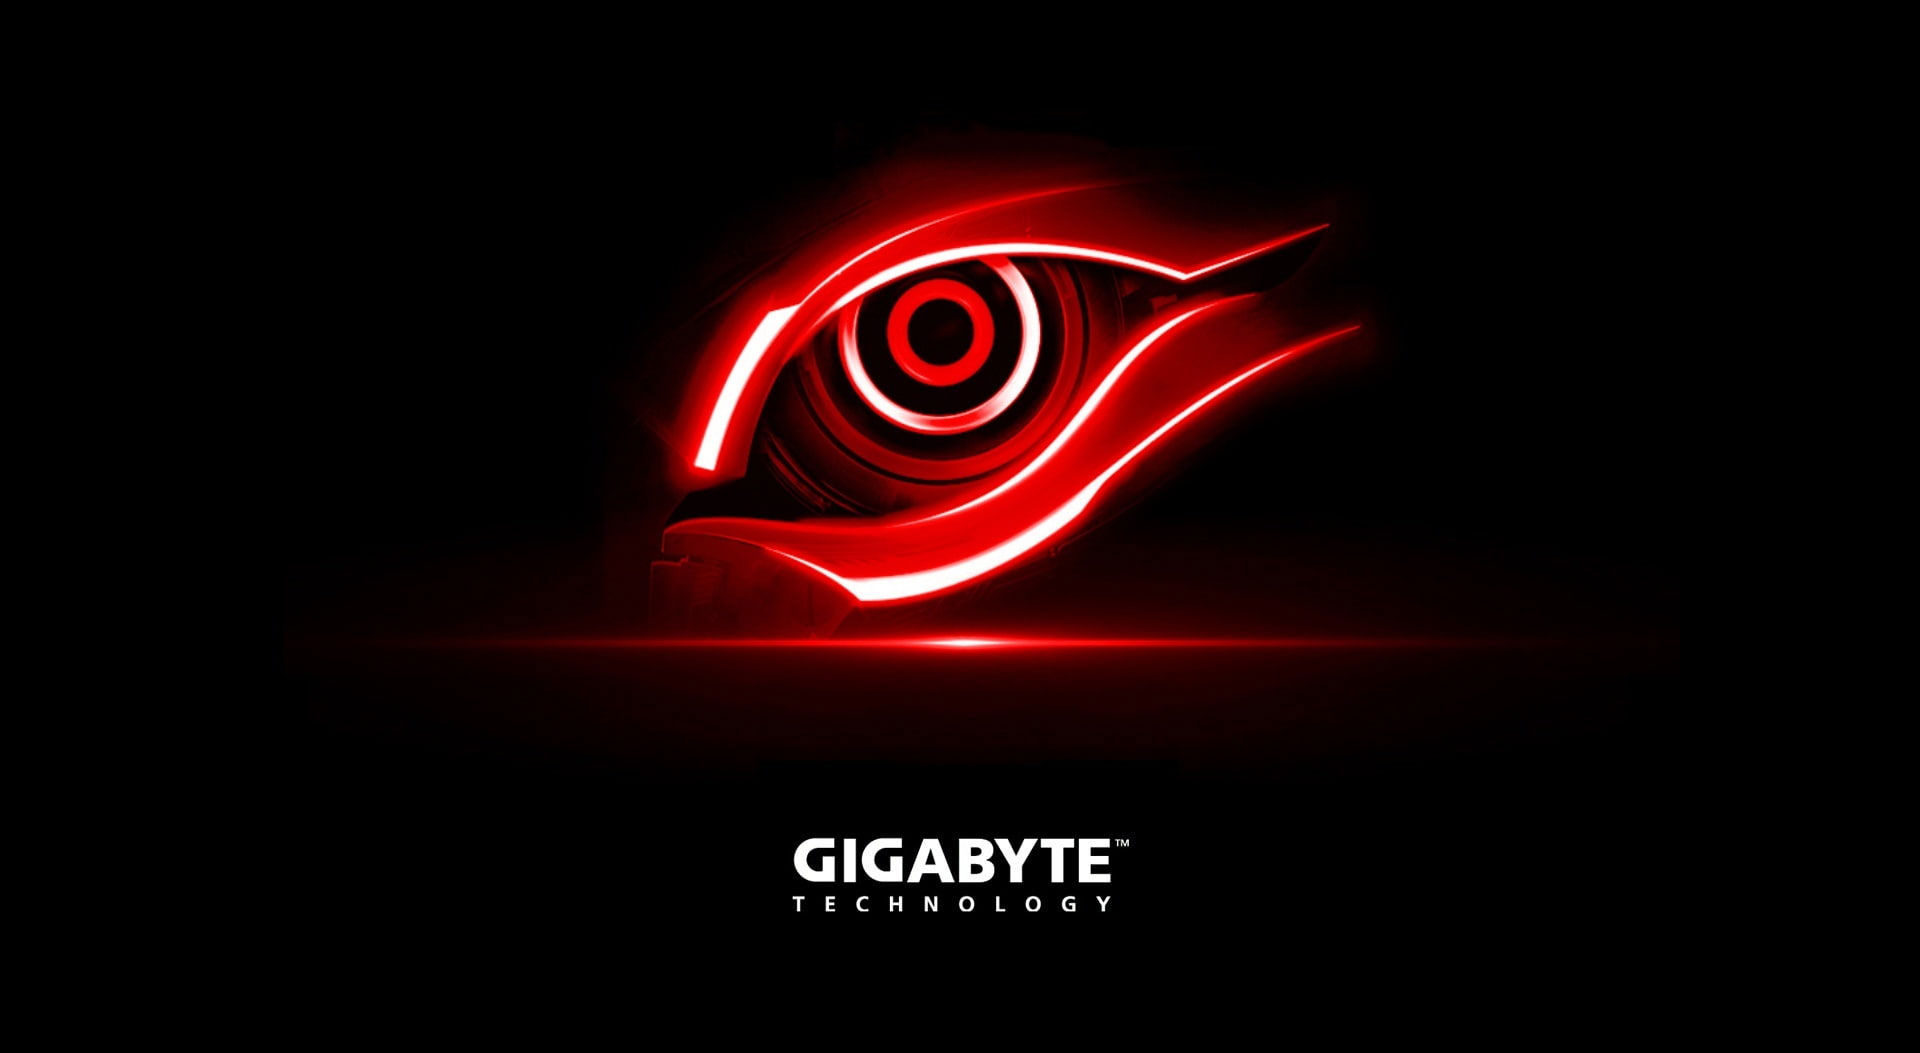 Gigabyte Red Eye wallpaper, Gigabyte Technology wallpaper, Computers, Hardware